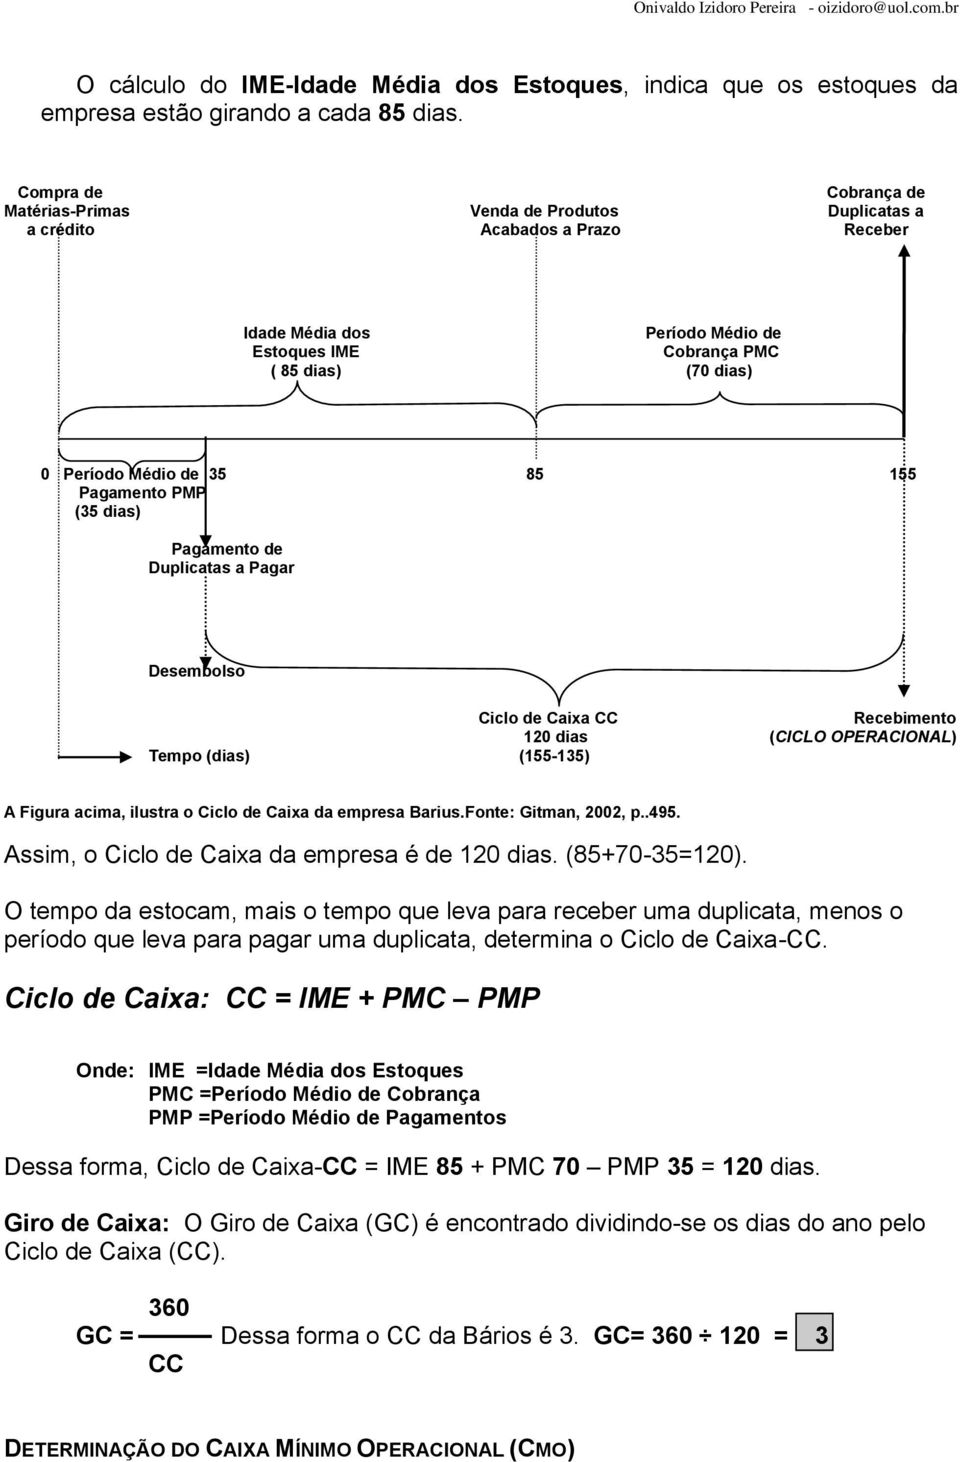 Desembolso Ciclo de Caixa CC Recebimento 120 dias (CICLO OPERACIONAL) Tempo (dias) (155-135) A Figura acima, ilustra o Ciclo de Caixa da empresa Barius.Fonte: Gitman, 2002, p..495.